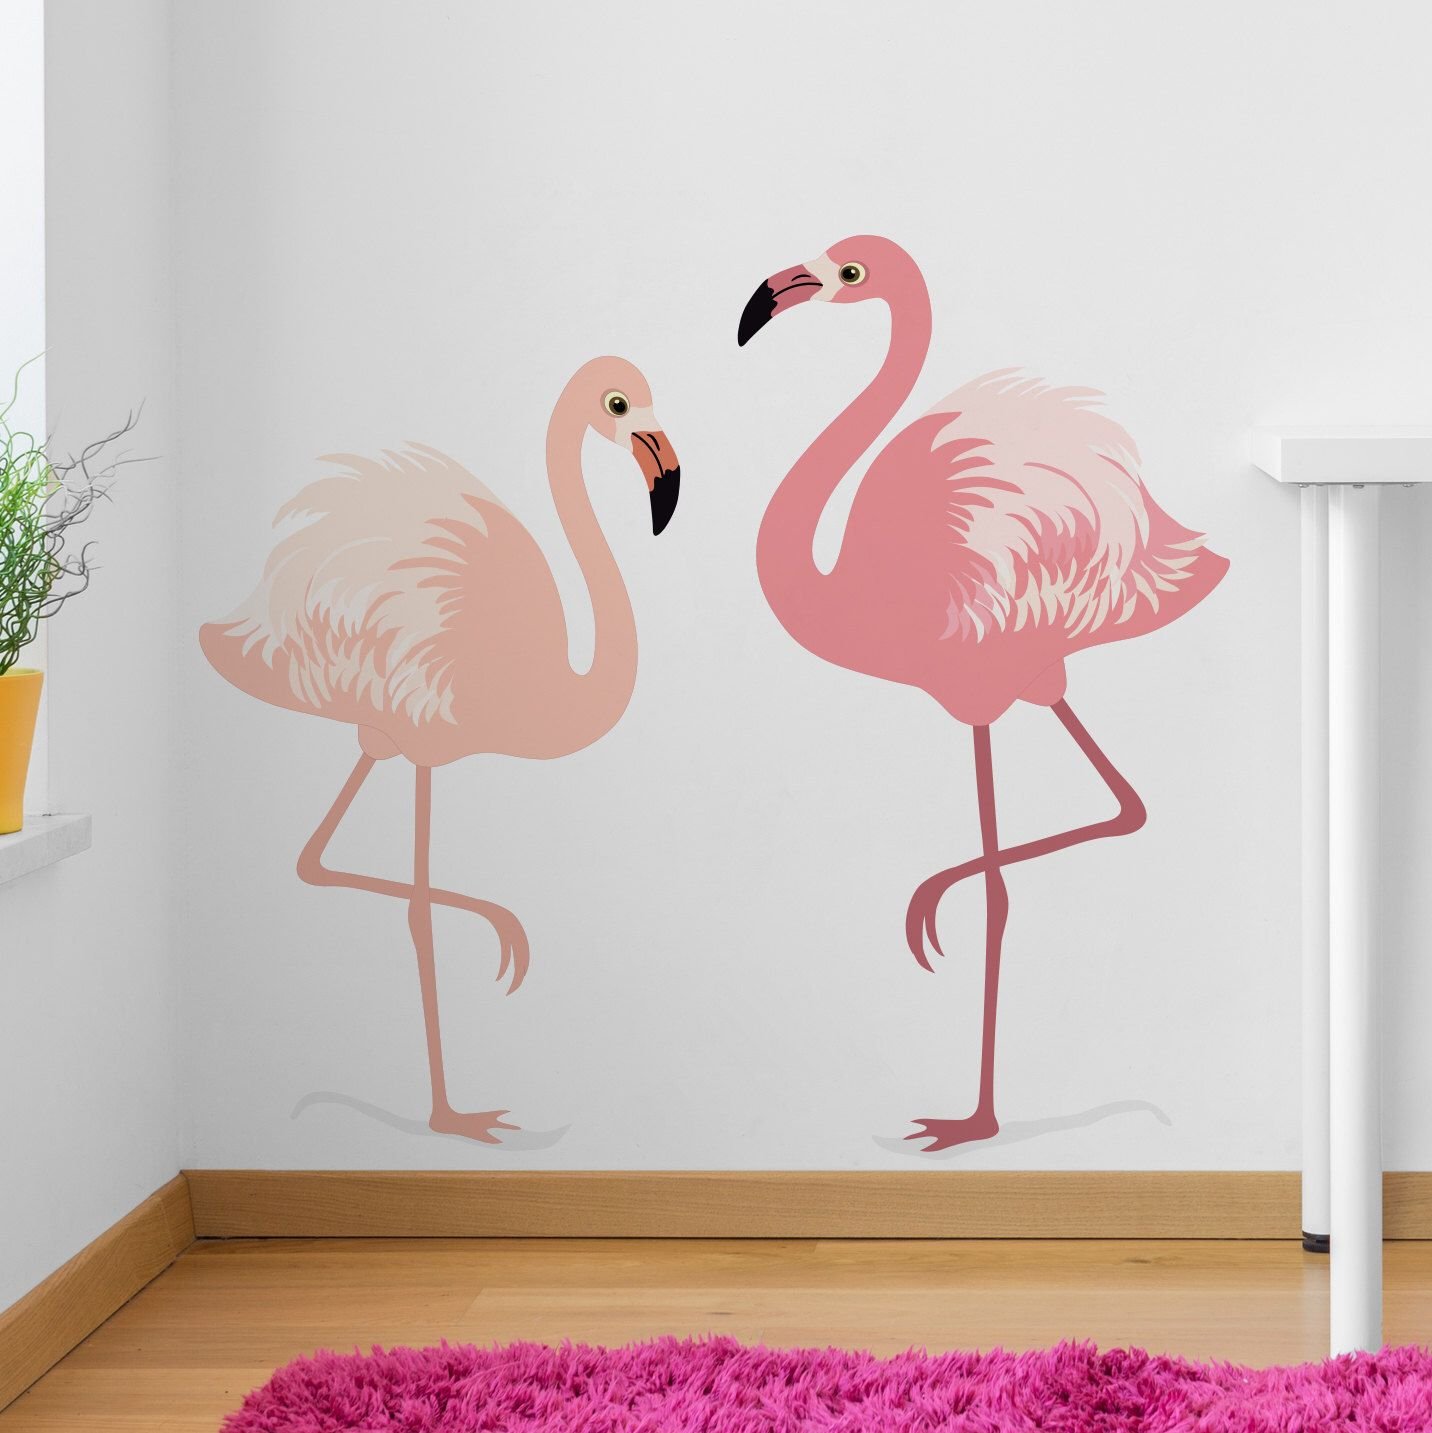 Фламинго на стене